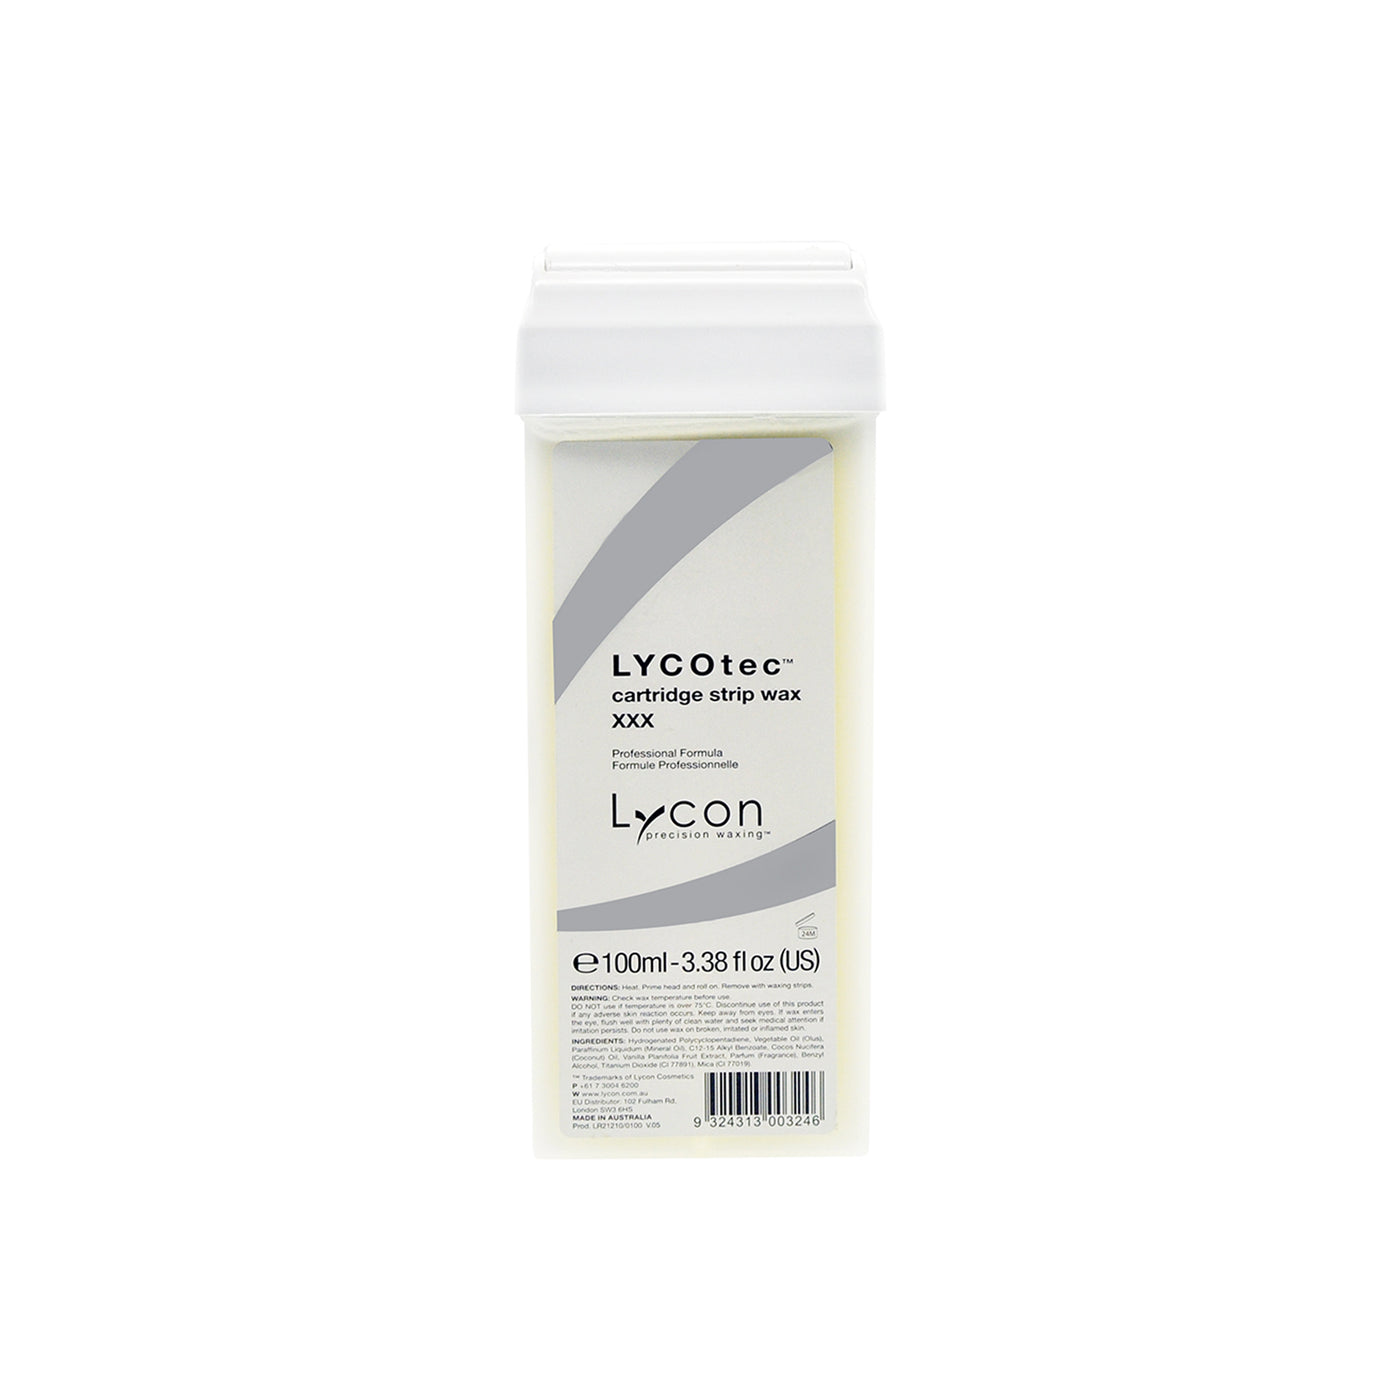 Lycon LycoTec Strip Wax Cartridge 100ml